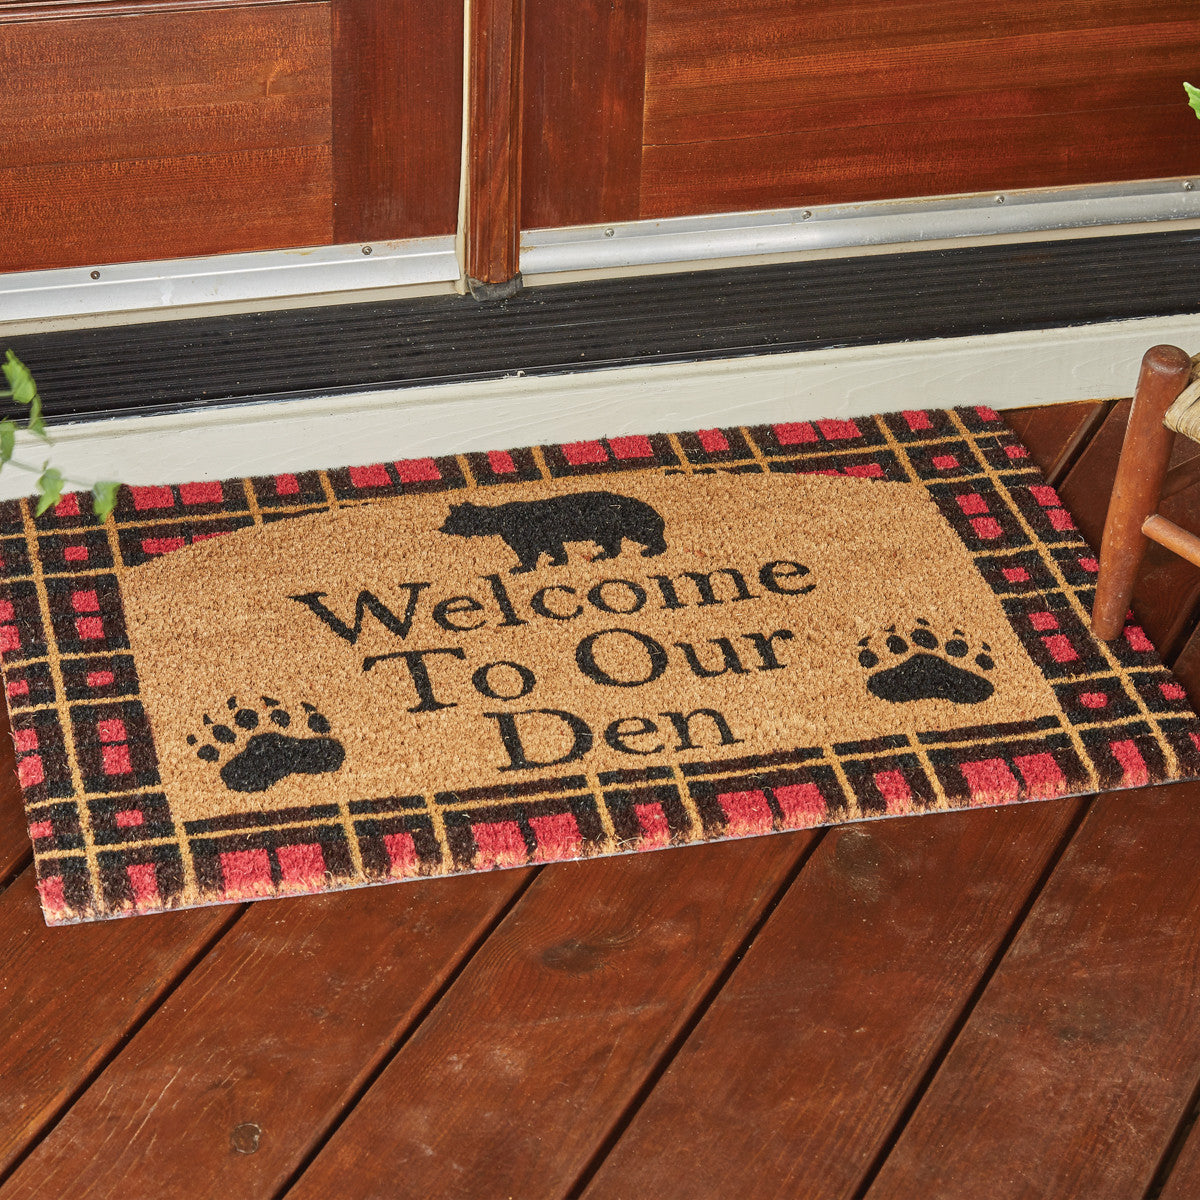 Welcome To Our Den Doormat Park Designs